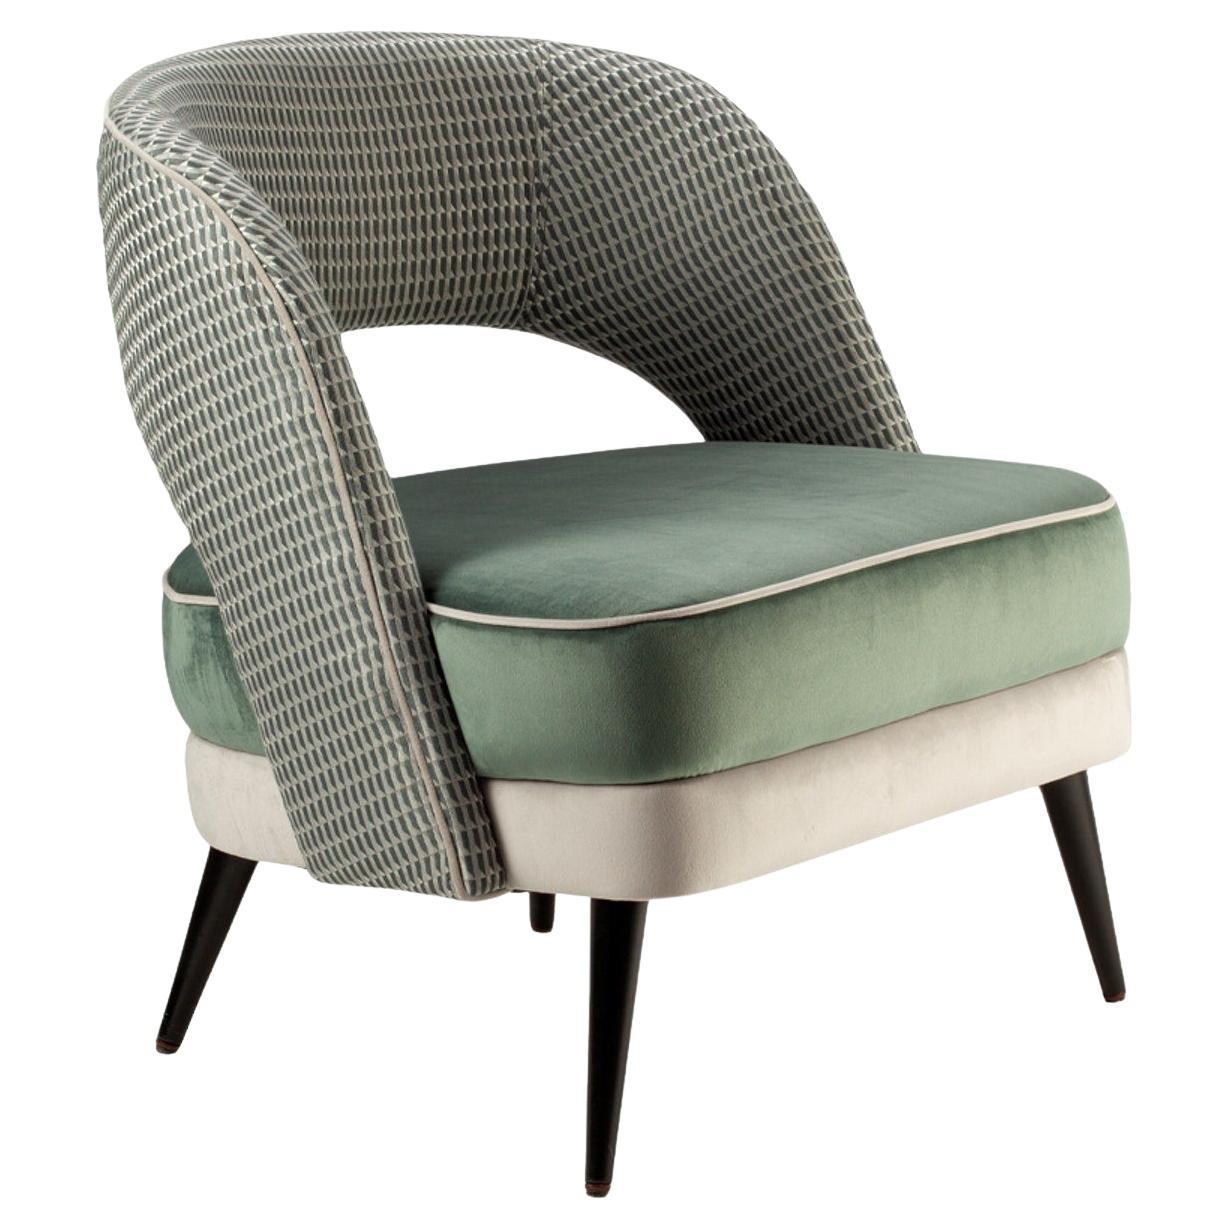 Der bequeme und elegante Sessel Ava ist ein vielseitiges Möbelstück, bei dem der Kreativität keine Grenzen gesetzt sind: Stoffe, Massivholz, lackiertes Holz und Messingbeschläge werden ausgewählt und kombiniert, um die perfekte Kombination für jeden